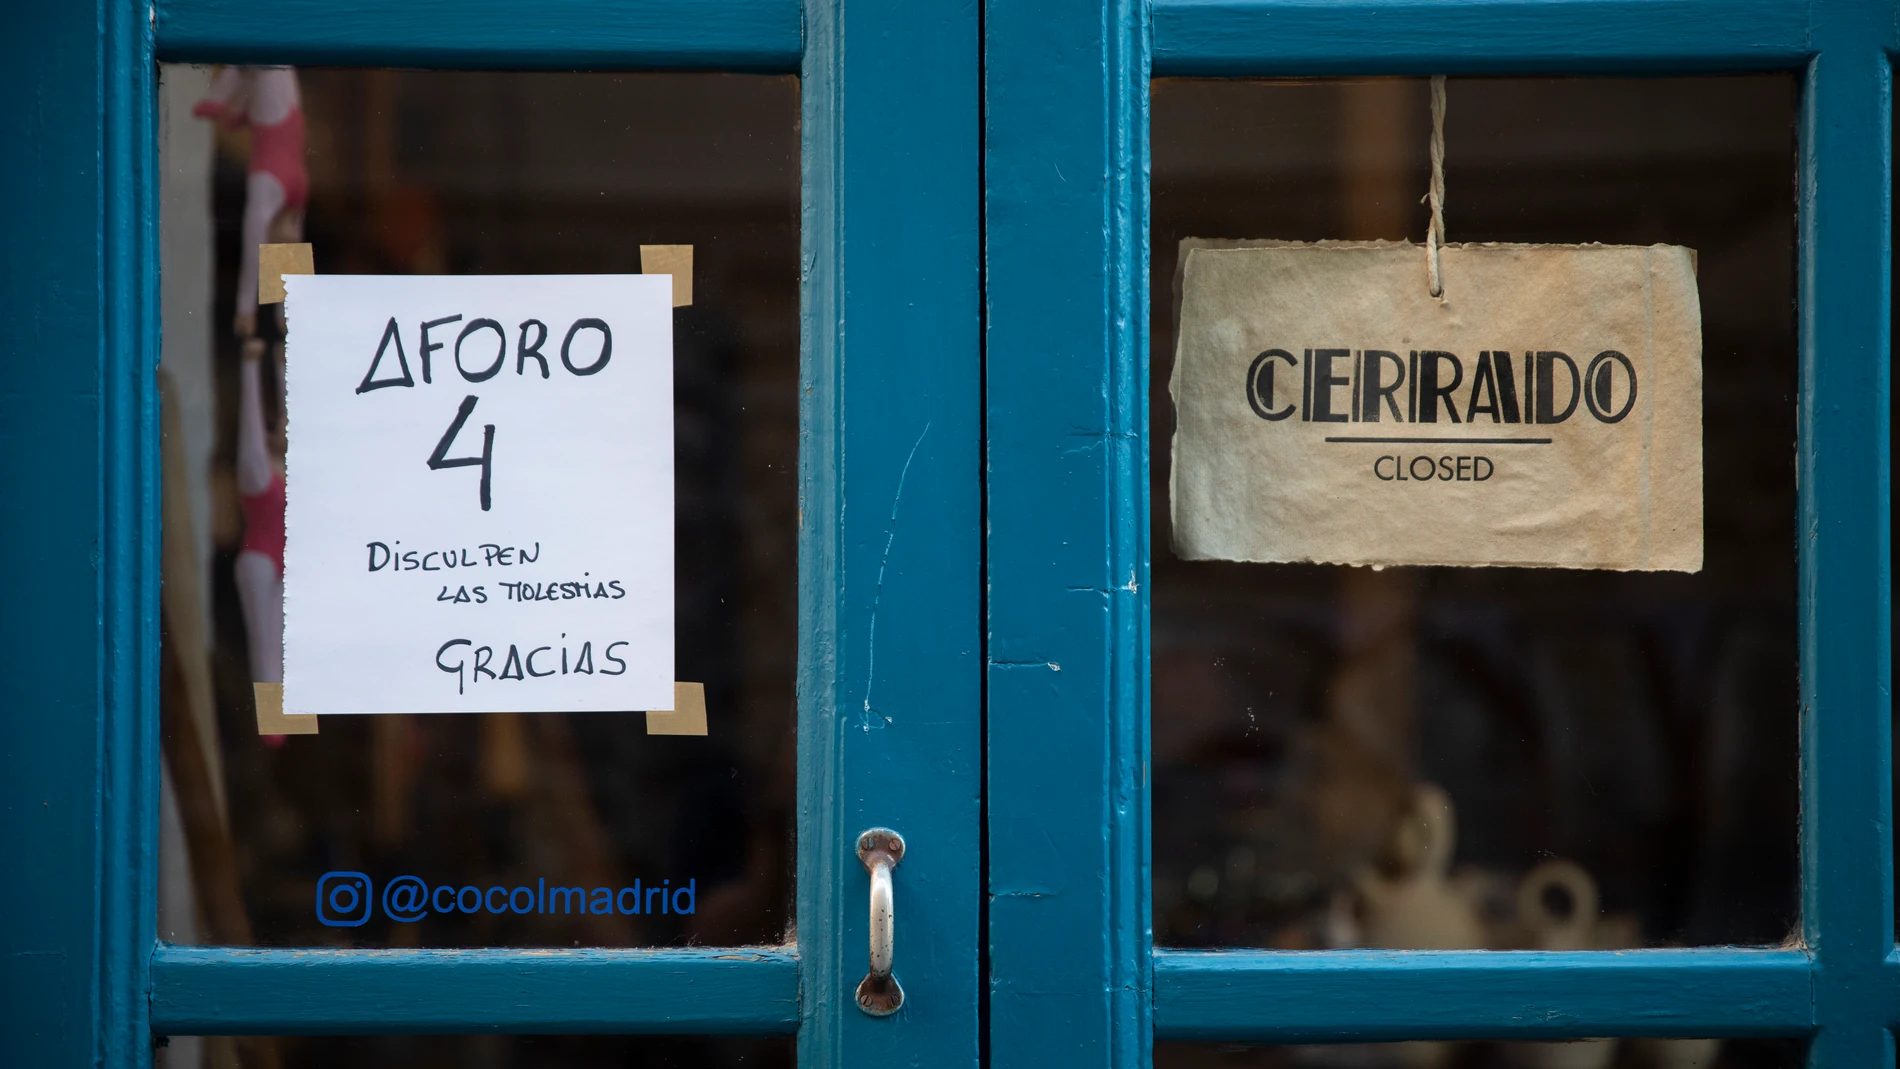 Imagen de un cartel en un comercio que indica el aforo máximo por el coronavirus y otro que indica que se encuentra cerrado el establecimiento.